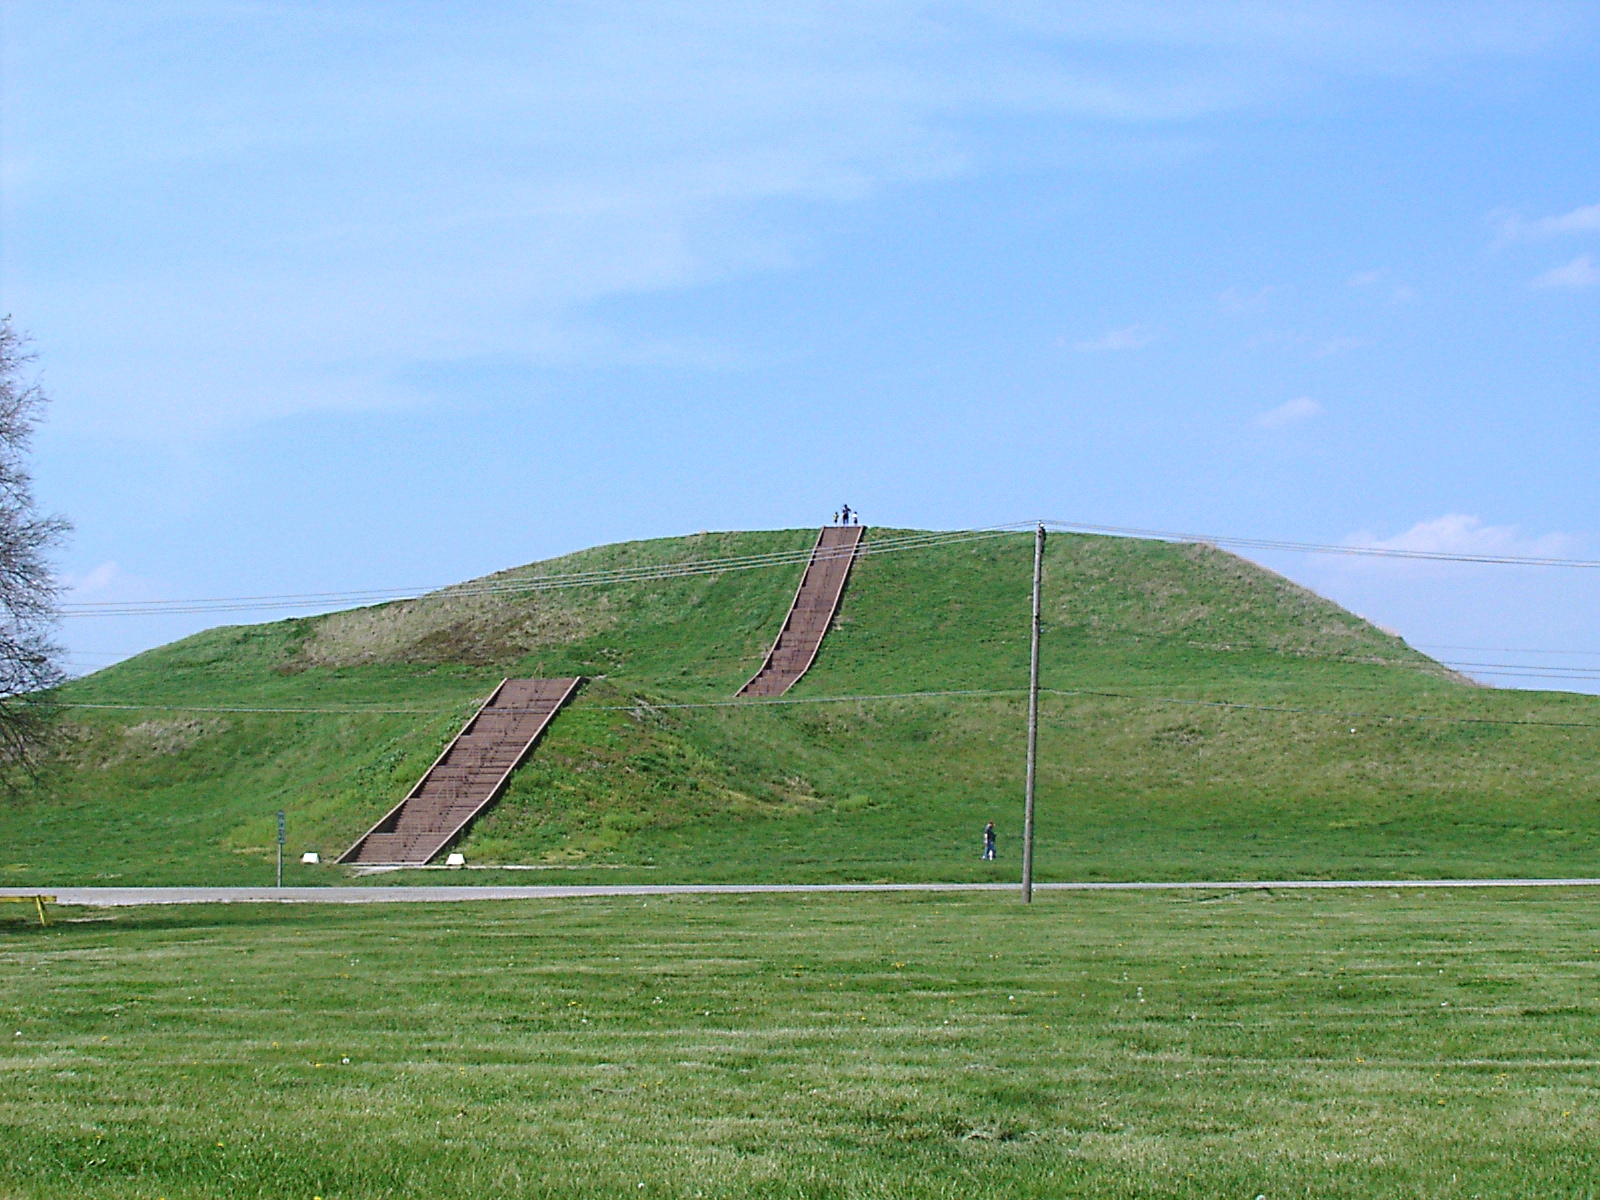 Cahokia Mounds Illinois